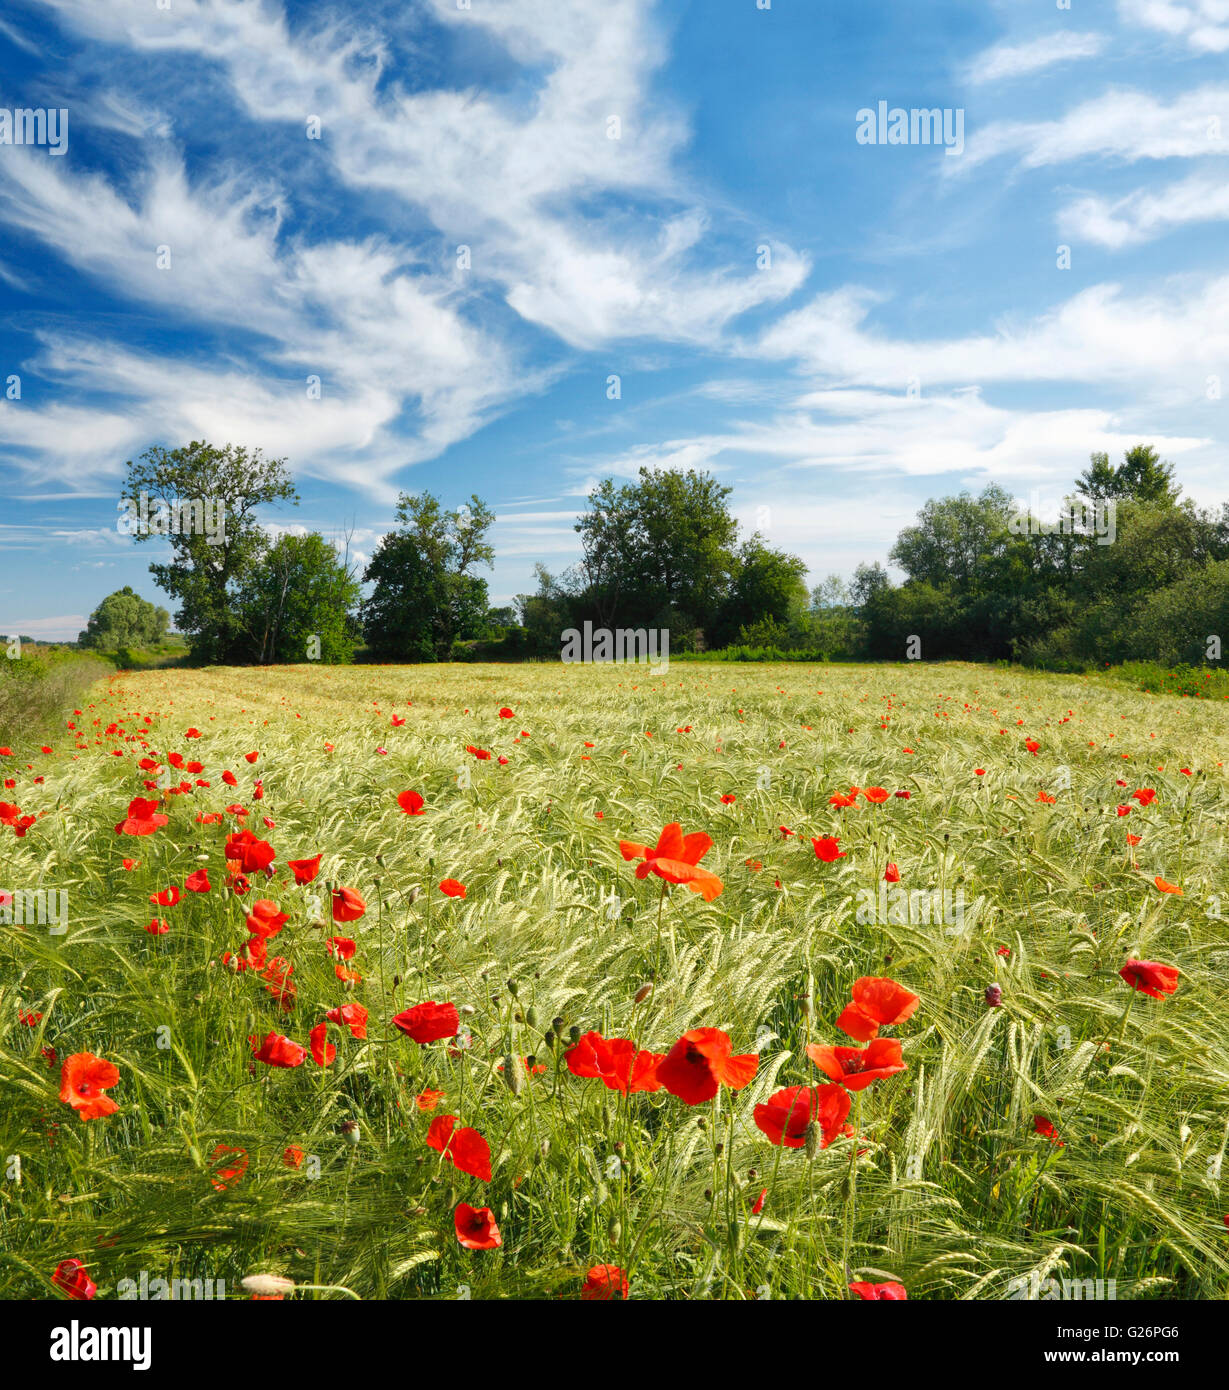 Fleurs de pavot rouge dans un champ de blé avec de beaux nuages dans le ciel Banque D'Images